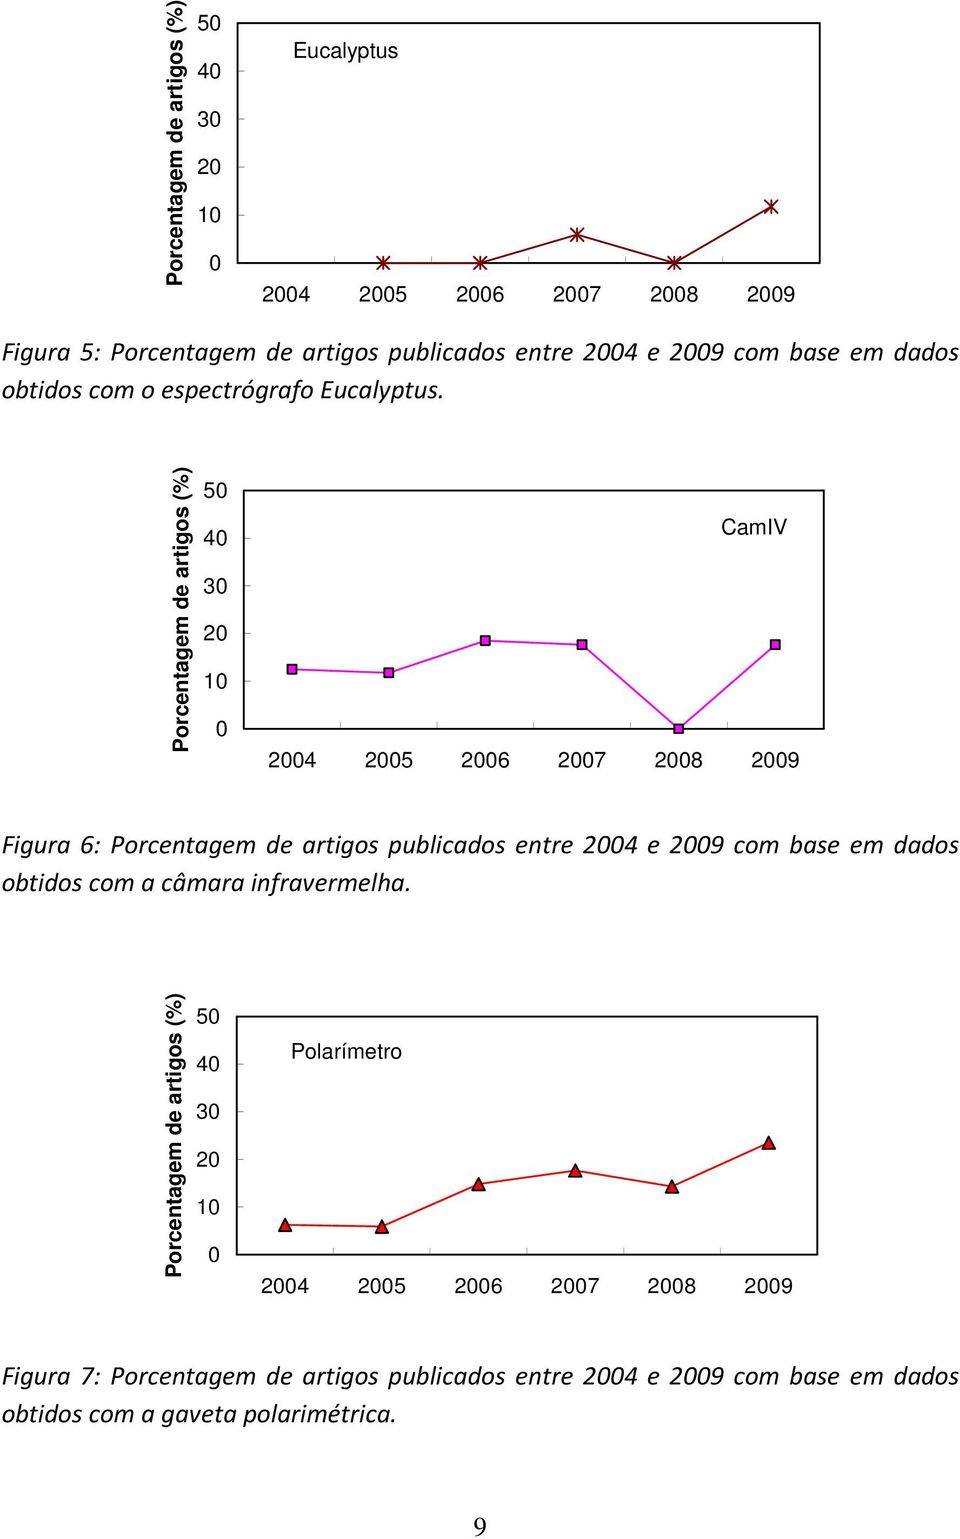 Porcentagem de artigos (%) 50 40 30 20 10 0 CamIV 2004 2005 2006 2007 2008 2009 Figura 6: Porcentagem de artigos publicados entre 2004 e 2009 com base